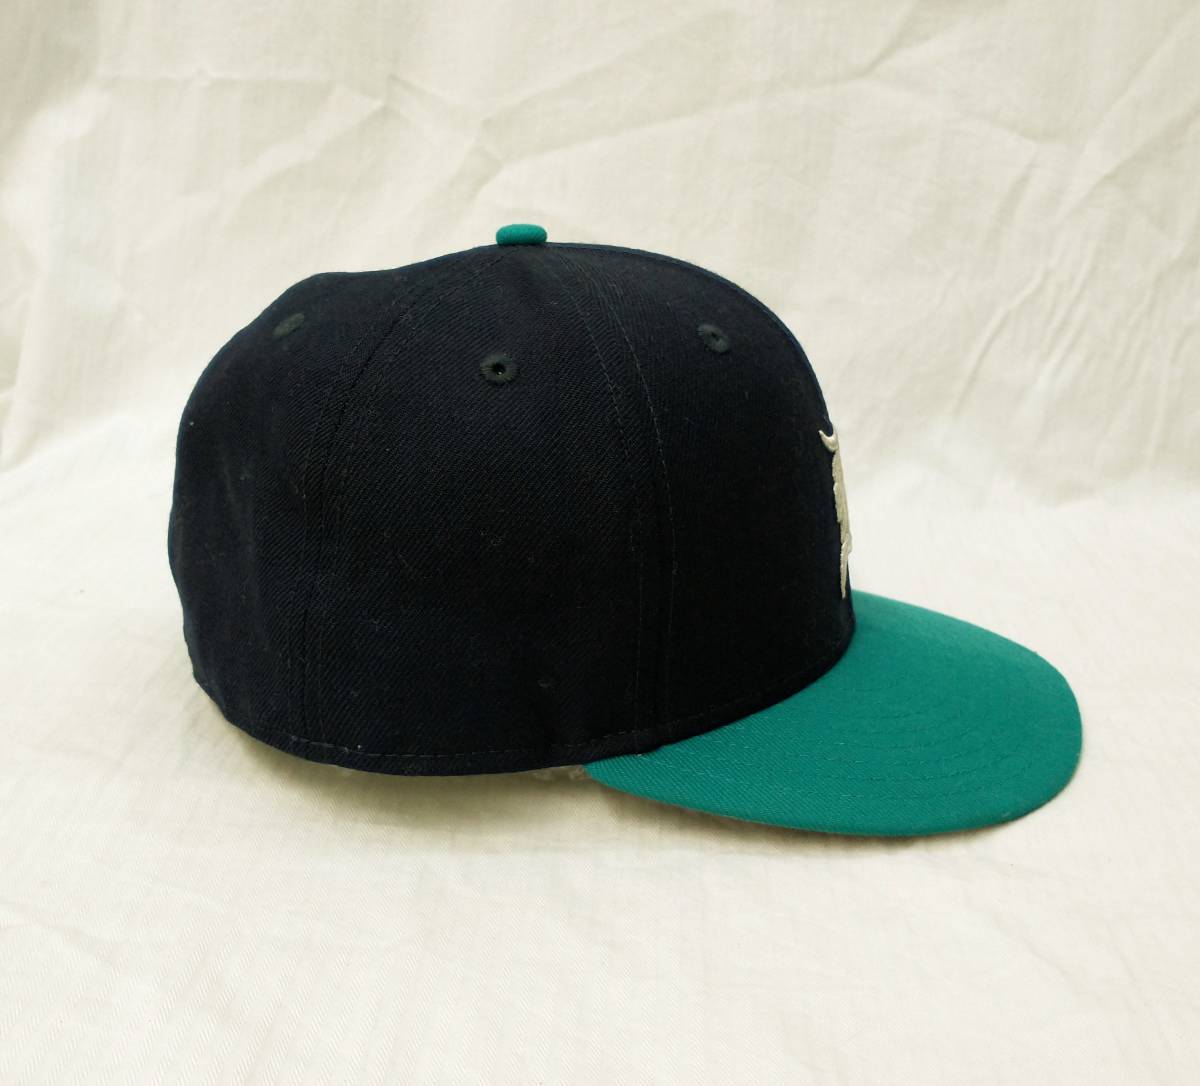 NEW ERA ESSENTIALS ニューエラ エッセンシャルズ キャップ 帽子 ブラック エメラルドグリーン 黒 緑 シアトル マリナーズ 店舗受取可_画像5